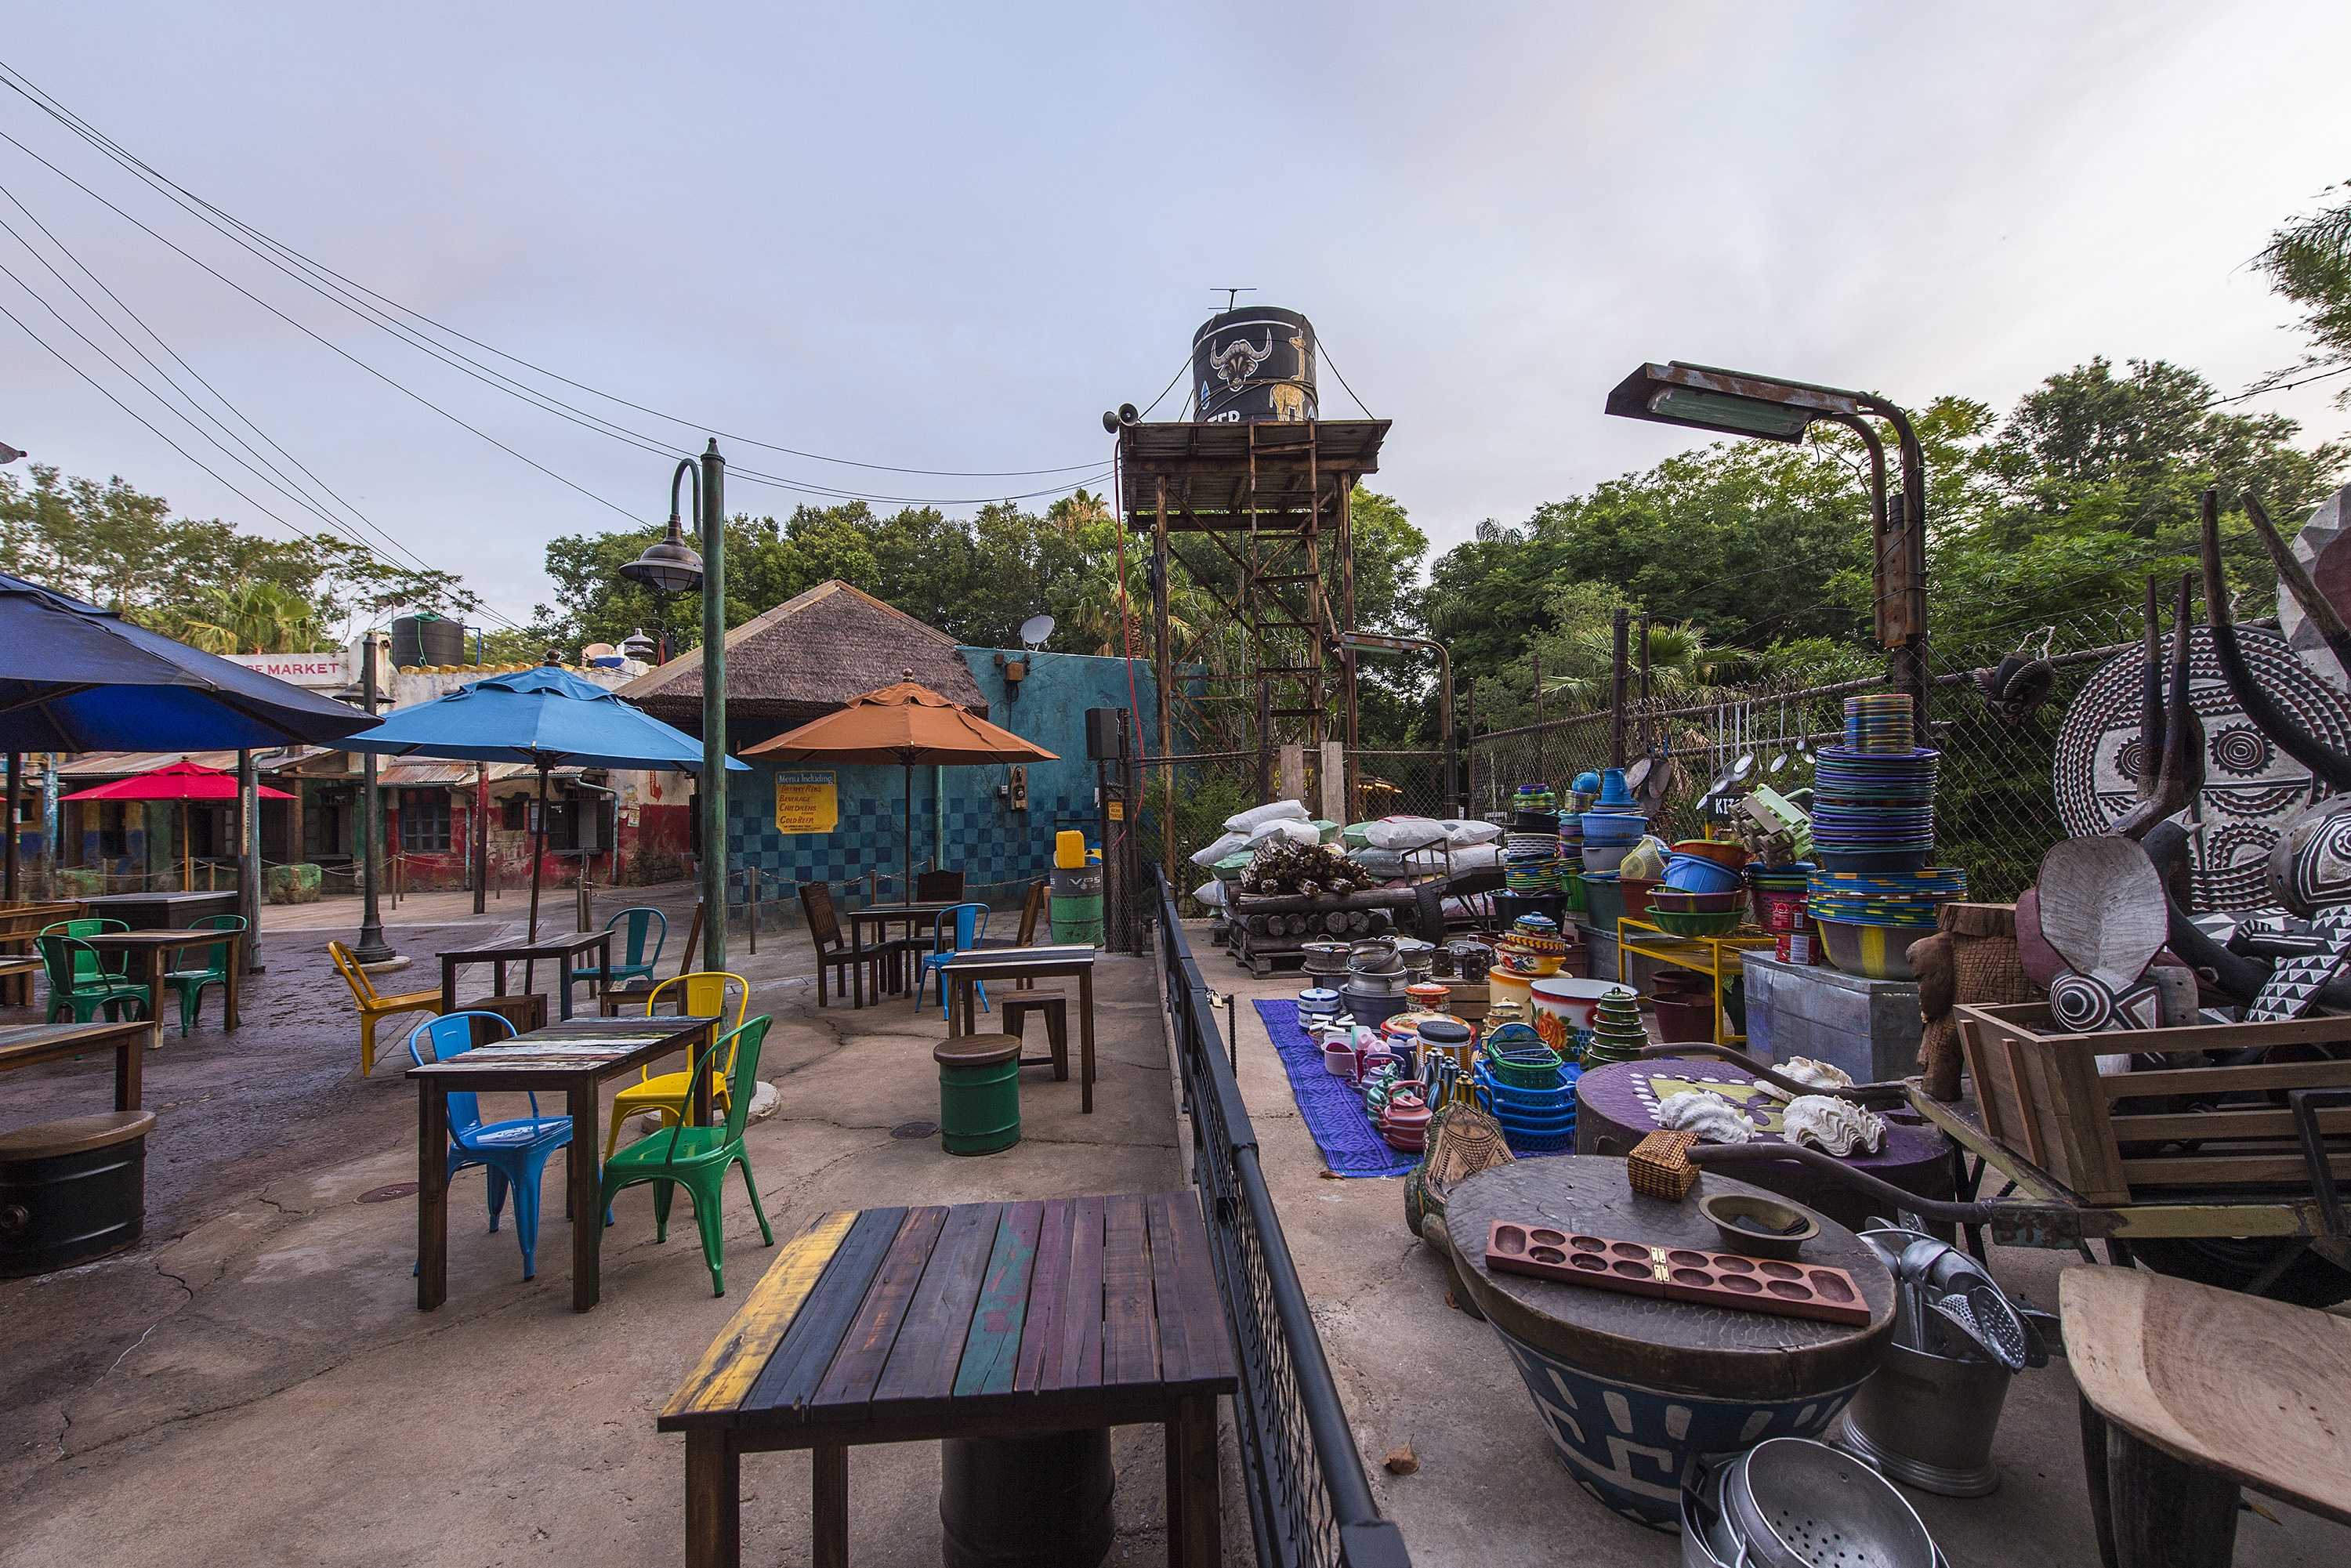 Harambe Village at Disney's Animal Kingdom introduces Harambe Market